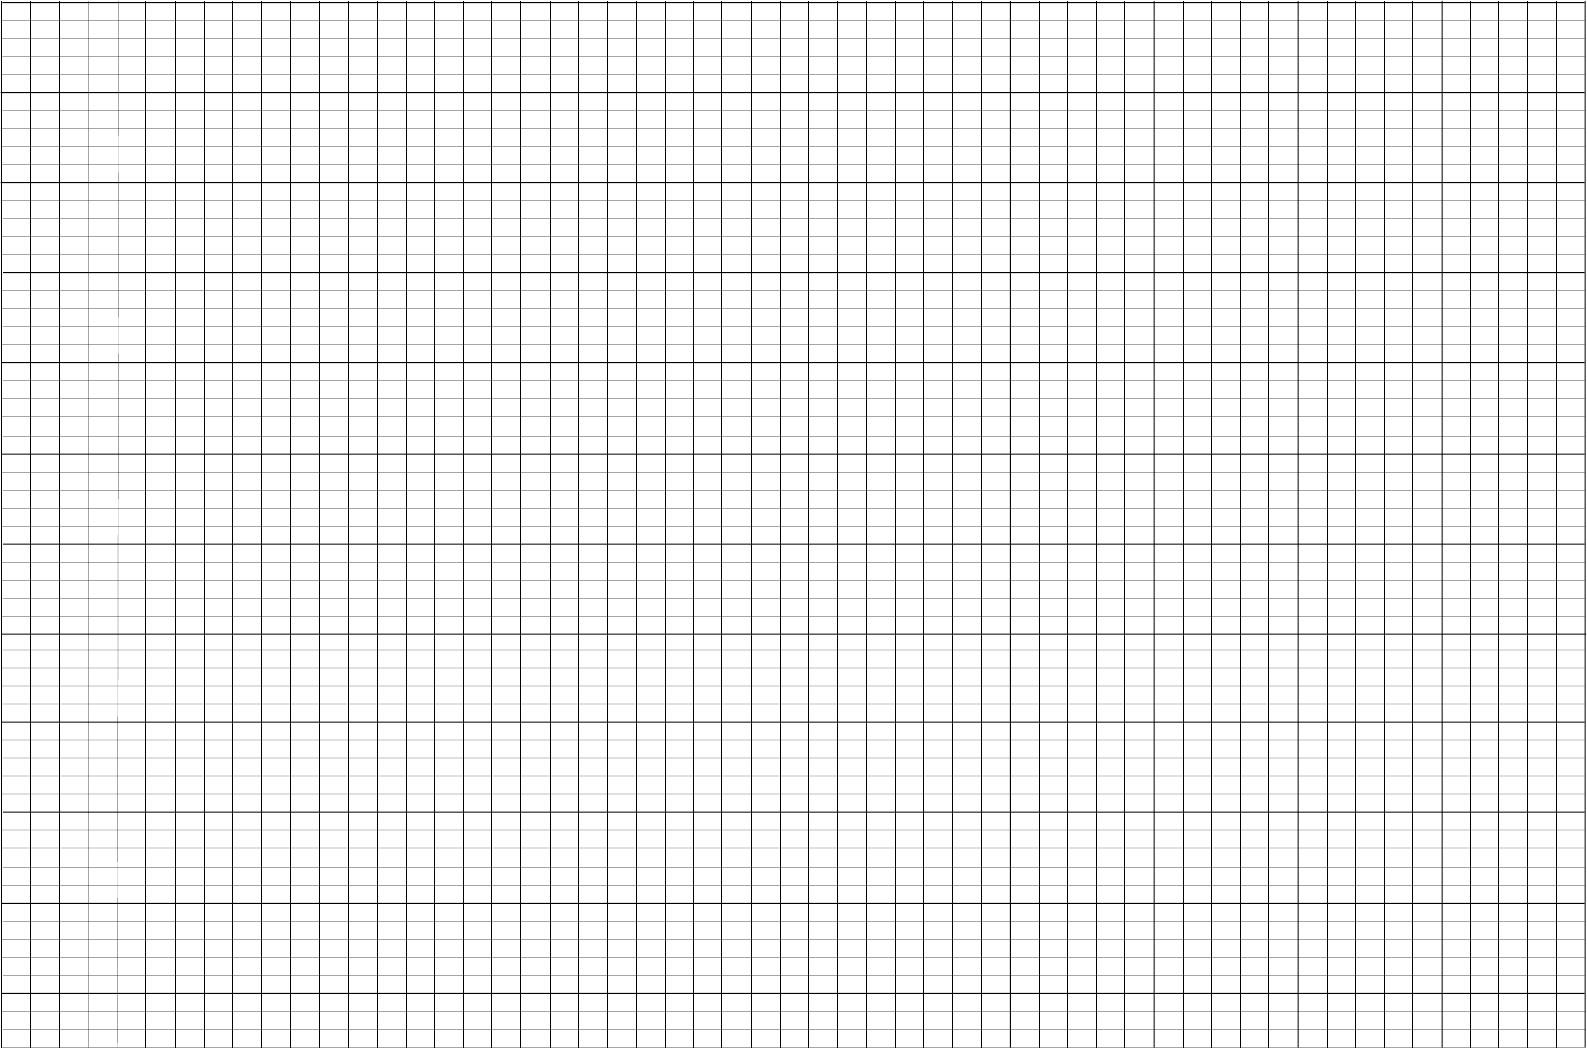 a4 Knitting Graph Paper, Ratio 2:3, Landscape Orientation